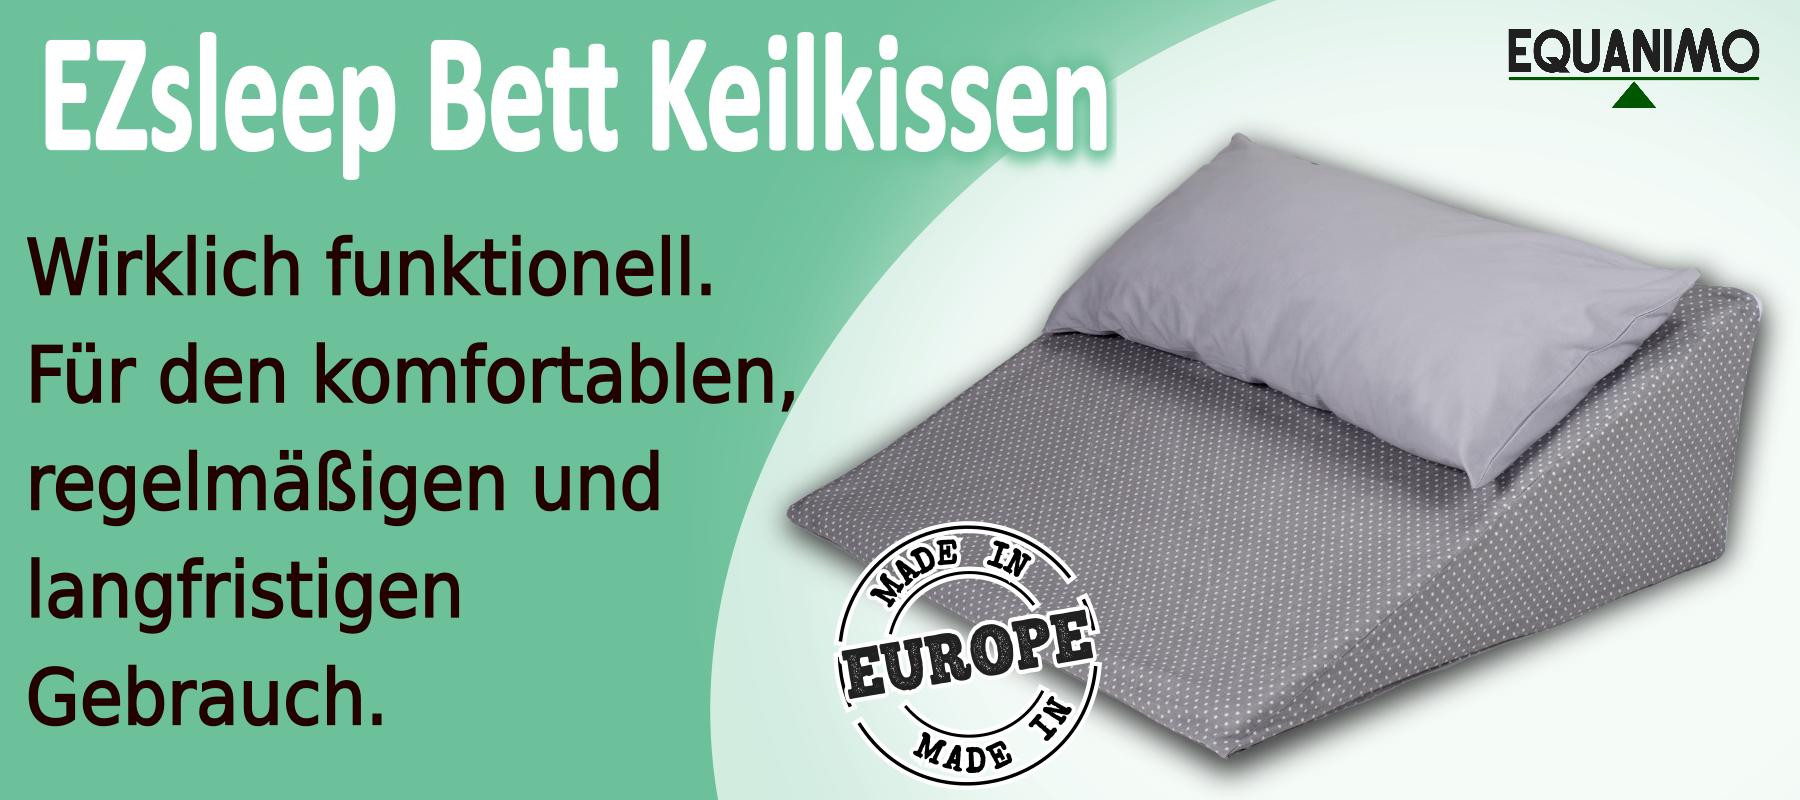 EZsleep Bettkeil: wirklich funktionell. Für den komfortablen regelmäßigen und langfristigen Gebrauch.